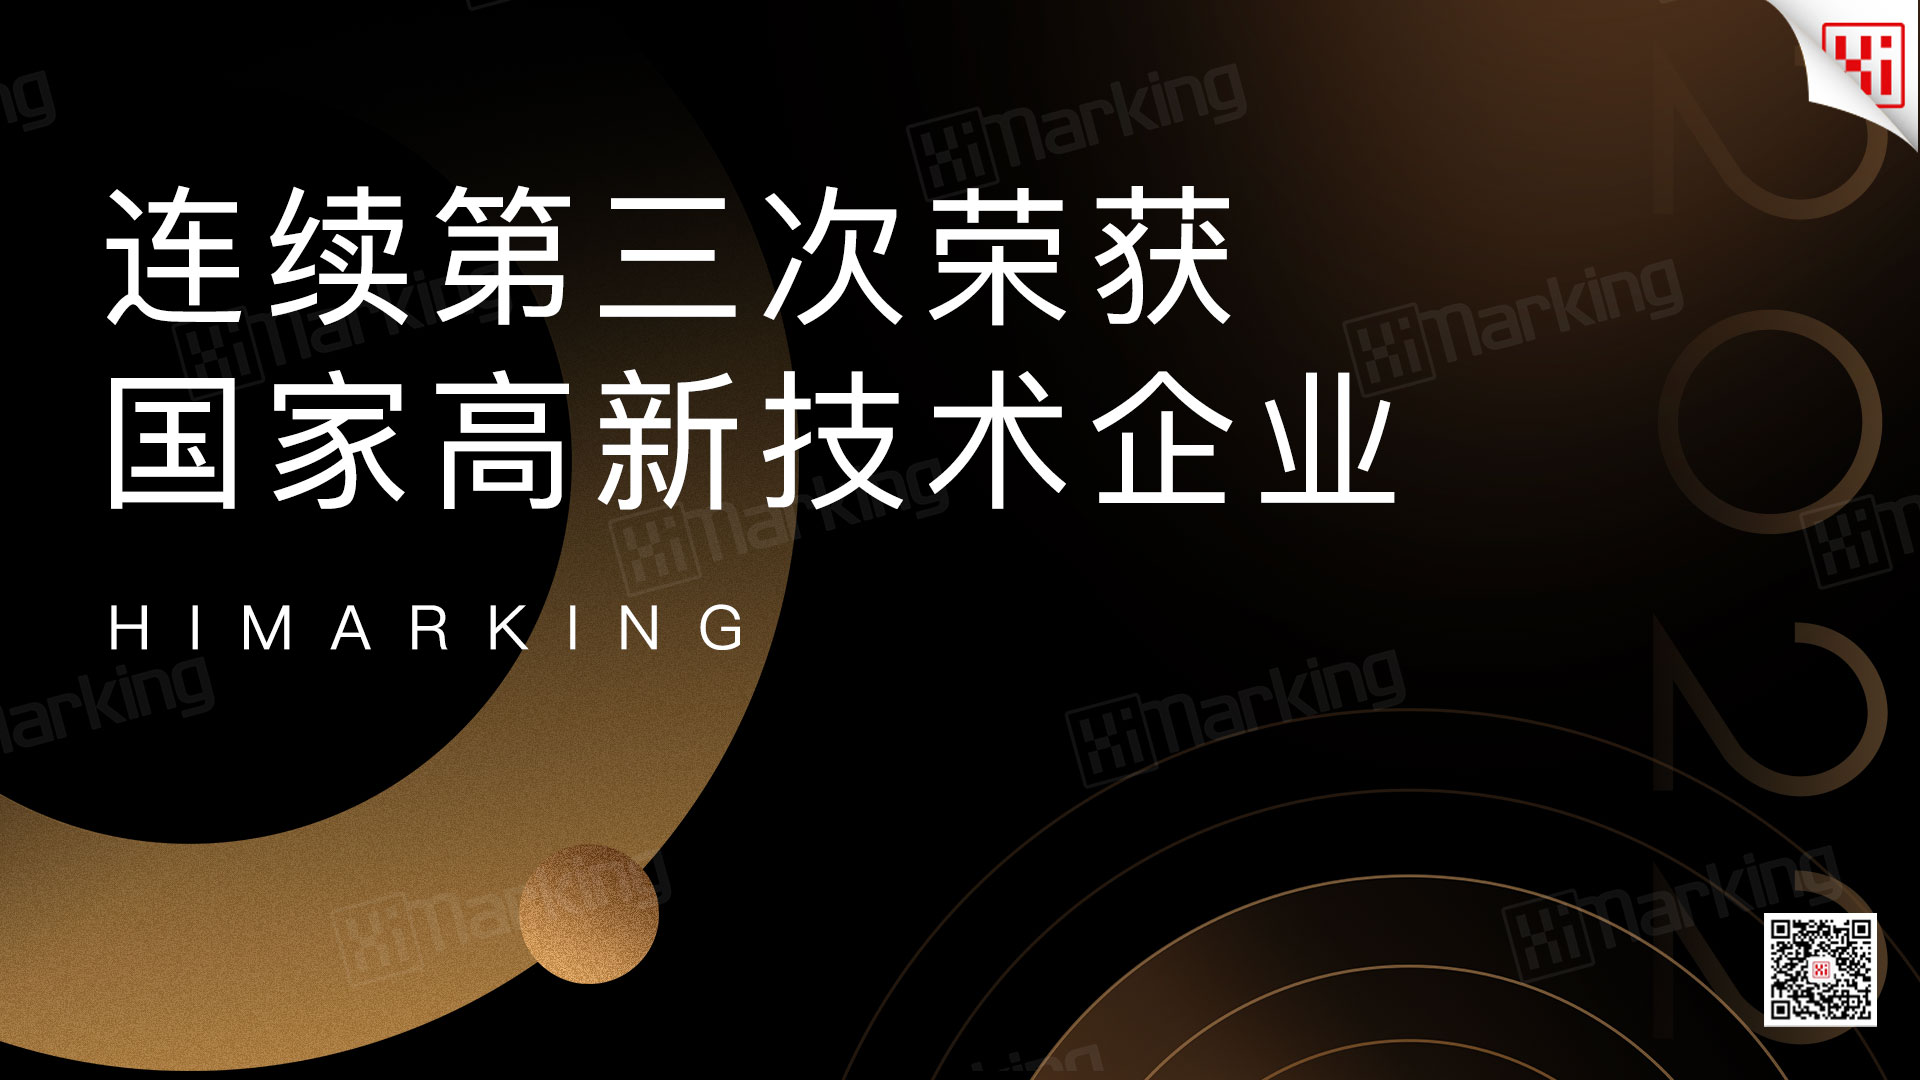 中选HiMarking连续第三次被荣获“国家高新技术企业”认证